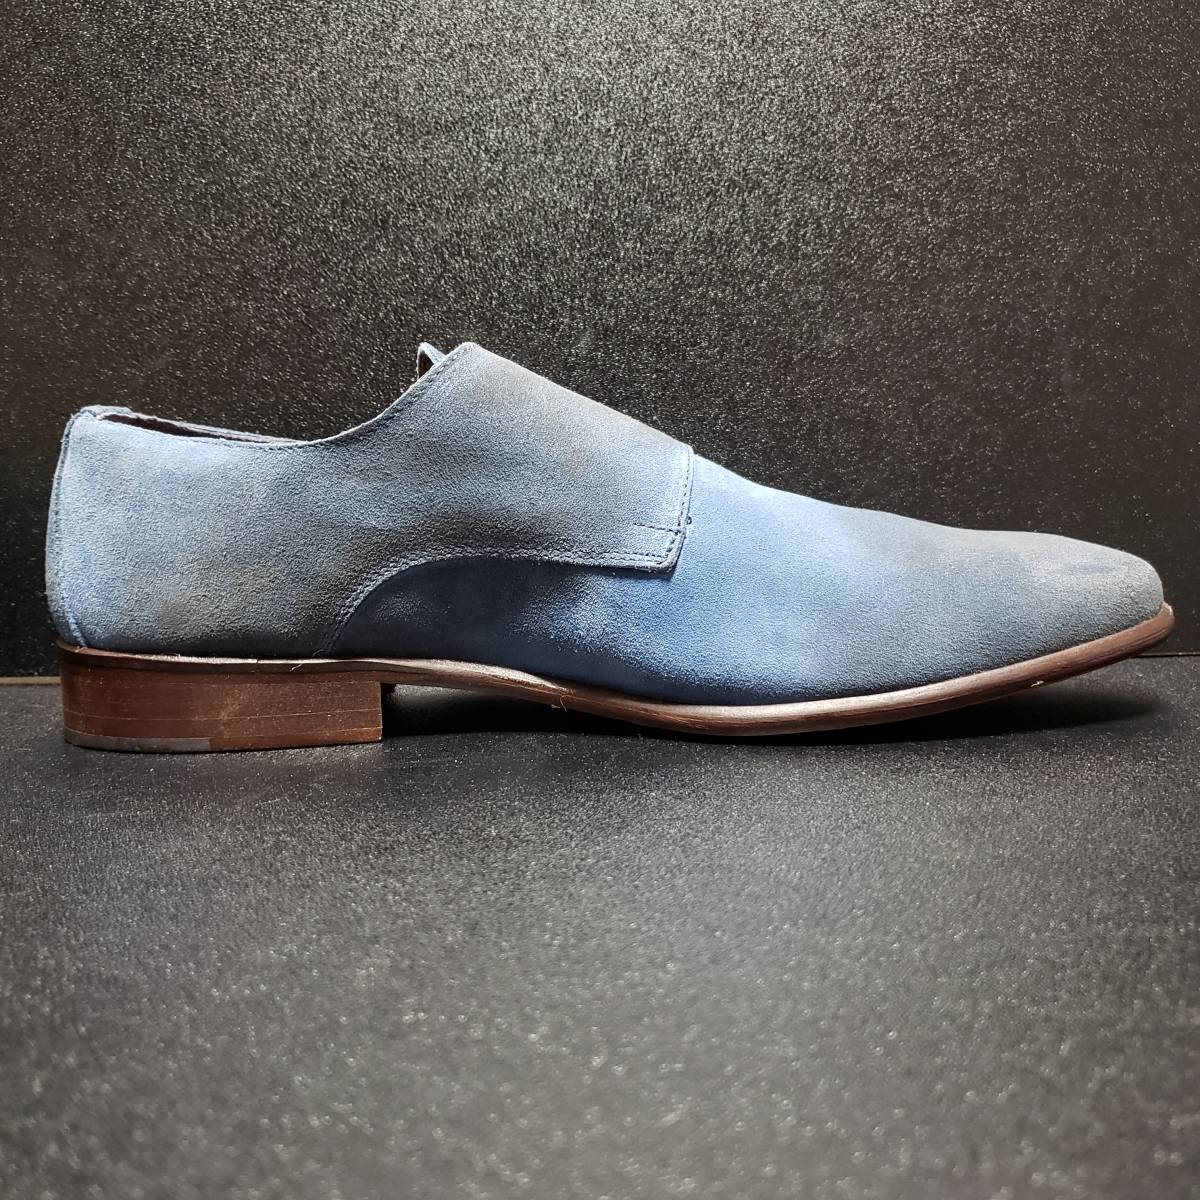 モマ (MOMA) イタリア製革靴 青 41 レビュー高評価の商品